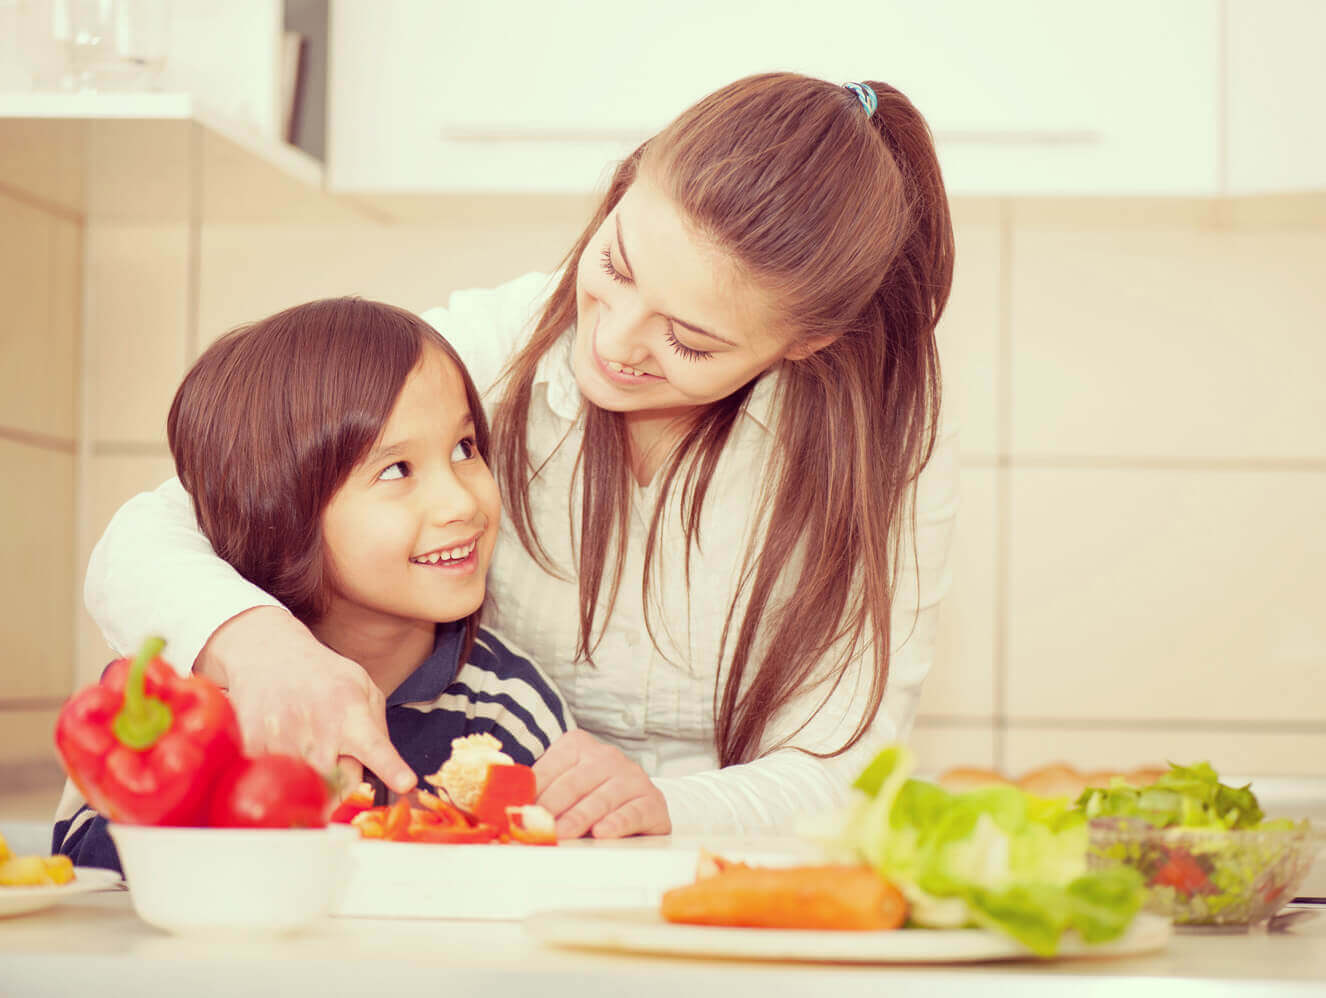 children-nutrition-when-how